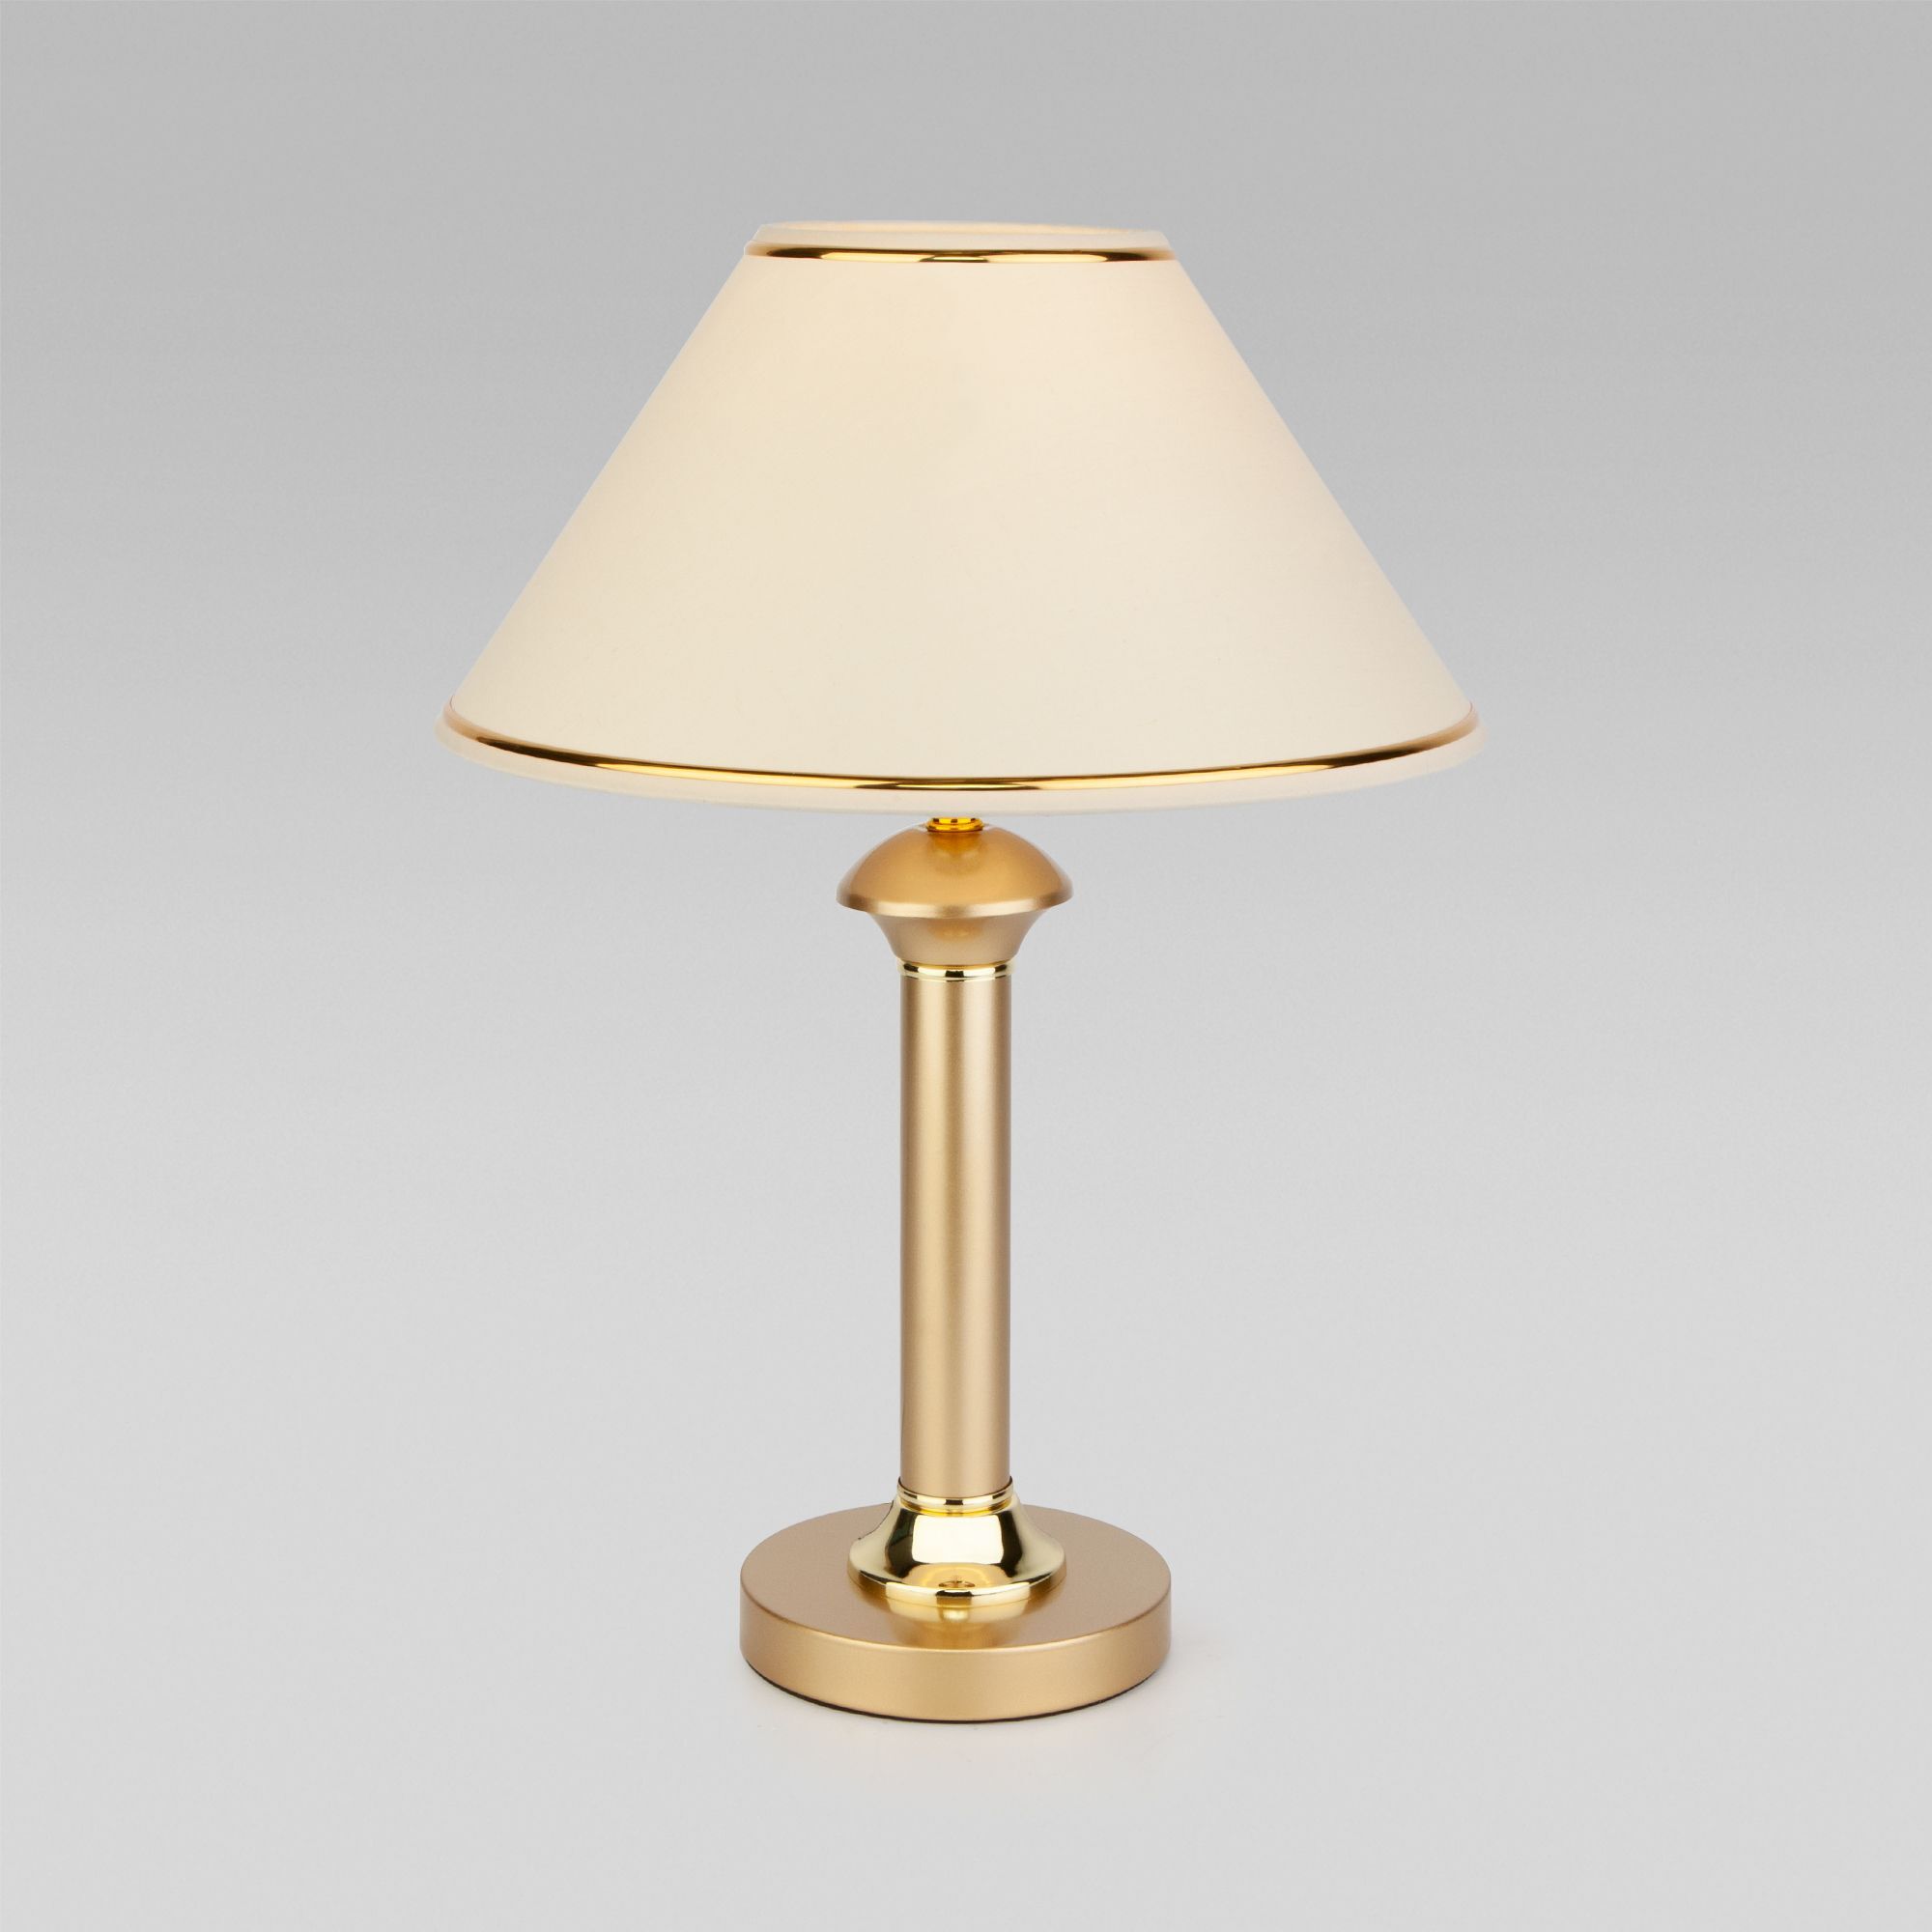 Классическая настольная лампа 60019/1 перламутровое золото